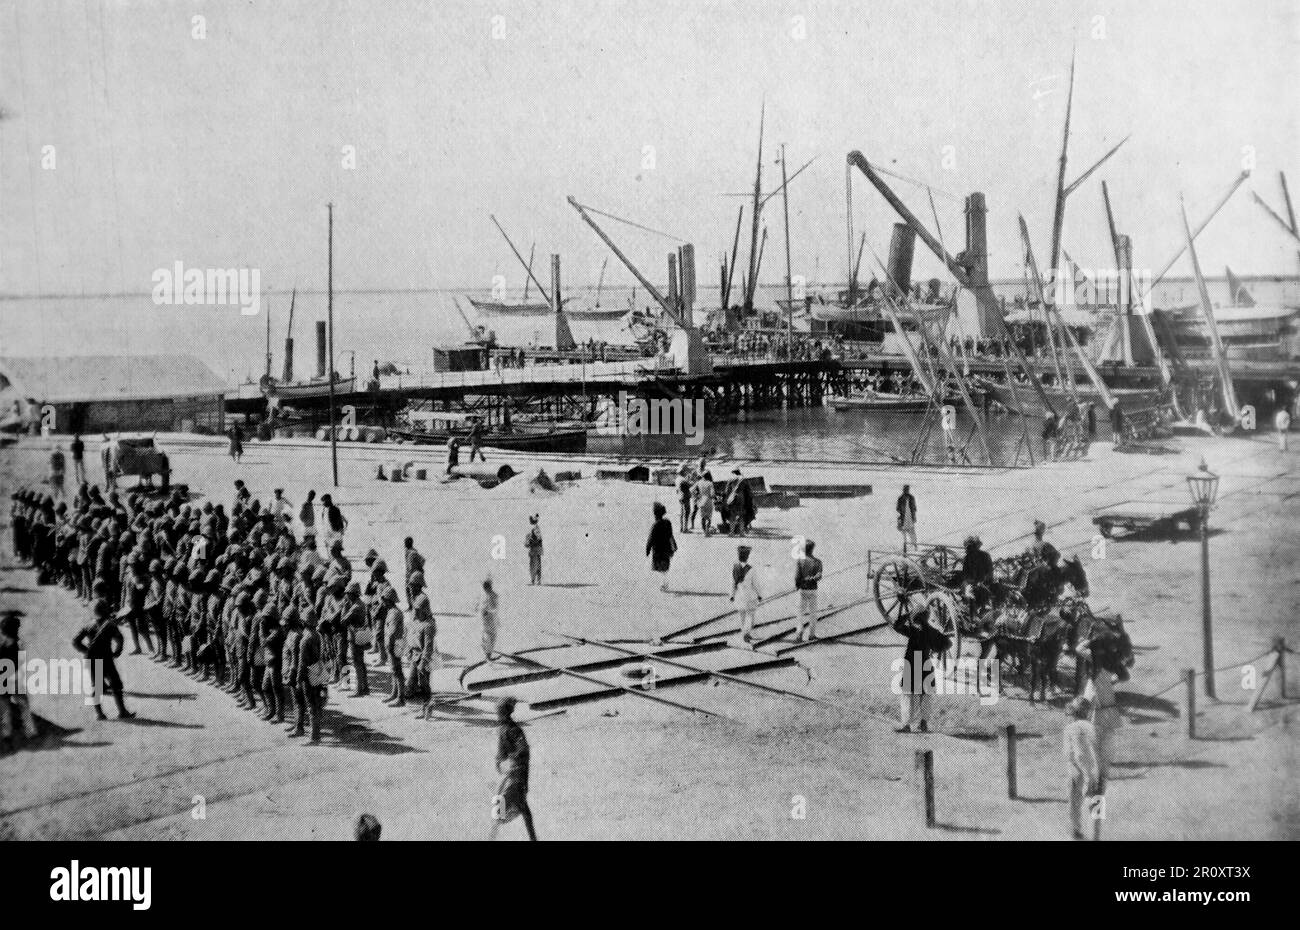 Der Burenkrieg, auch bekannt als der zweite Burenkrieg, der südafrikanische Krieg und der Anglo-Boer-Krieg. Dieses Bild zeigt einige der indischen Truppen, die in Karatschi an Bord gehen. Originalfoto von ‚Navy and Army‘, c1899. Stockfoto